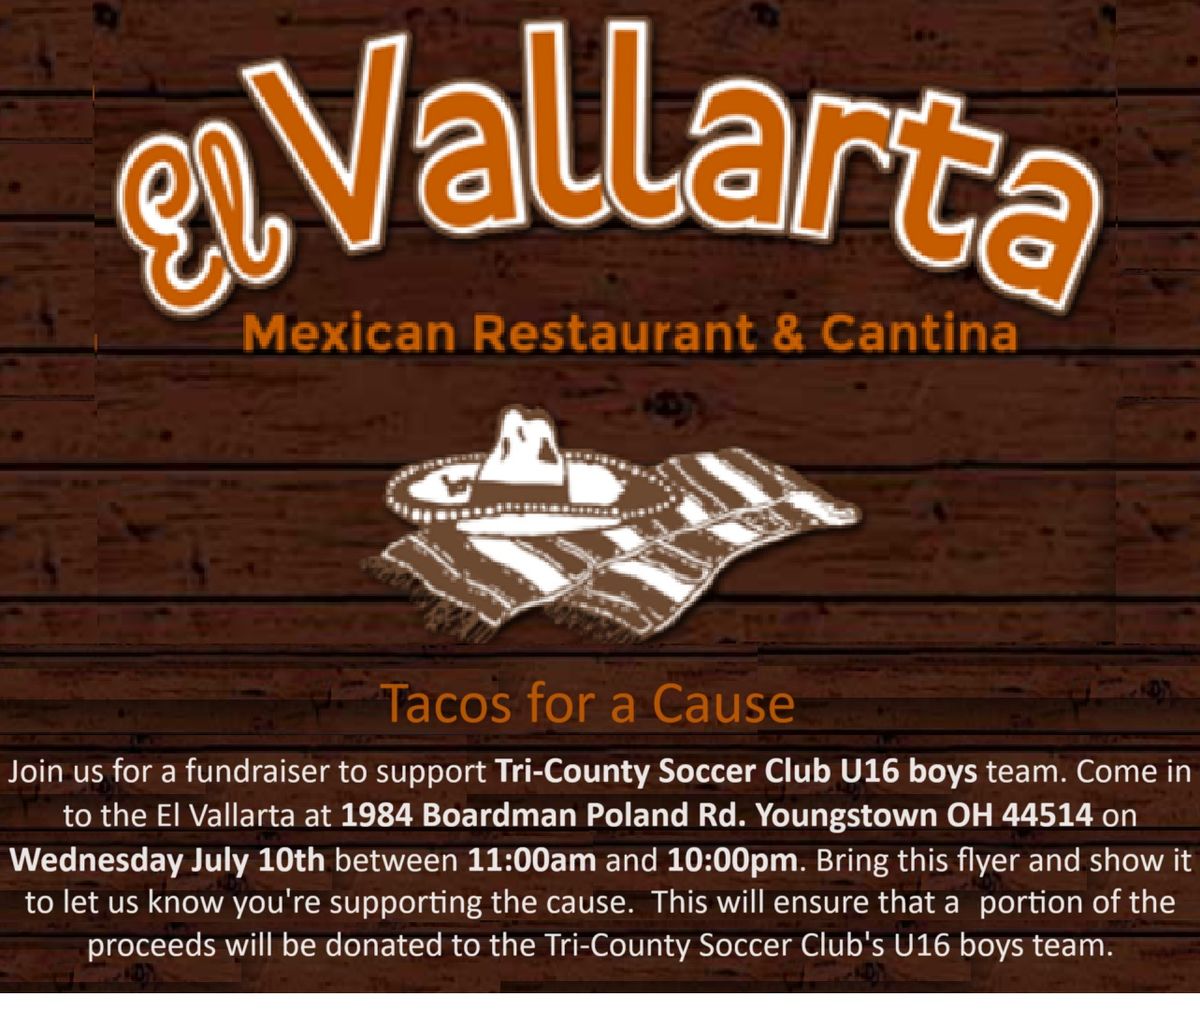 El Vallarta Poland Fundraiser for Tri-County Soccer Club U16 boys team